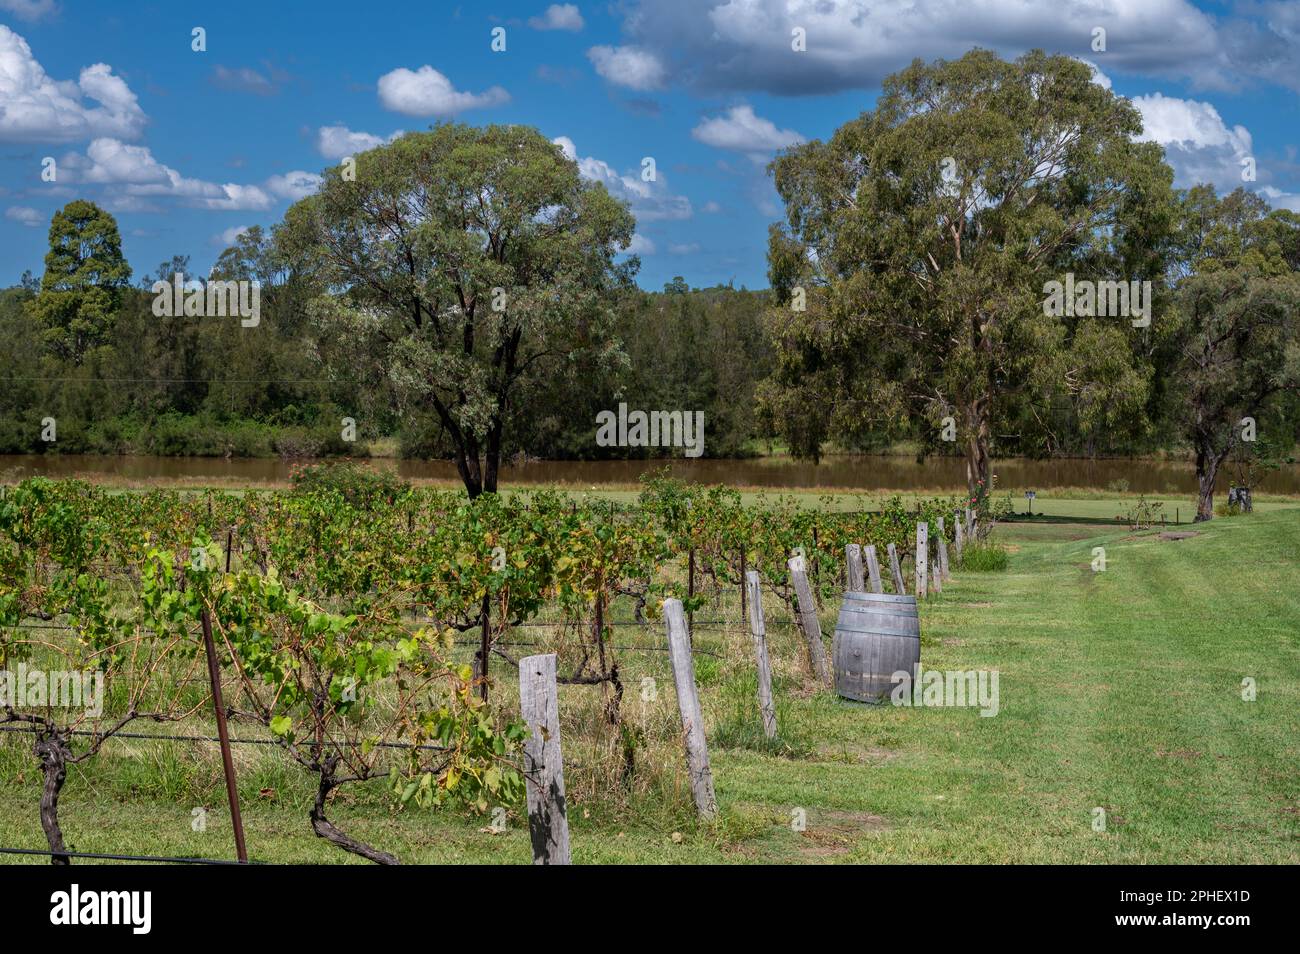 Un trattore spruzza le viti dopo che le uve sono state raccolte nella regione vinicola della Hunter Valley del New South Wales, NSW, Australia. Foto Stock